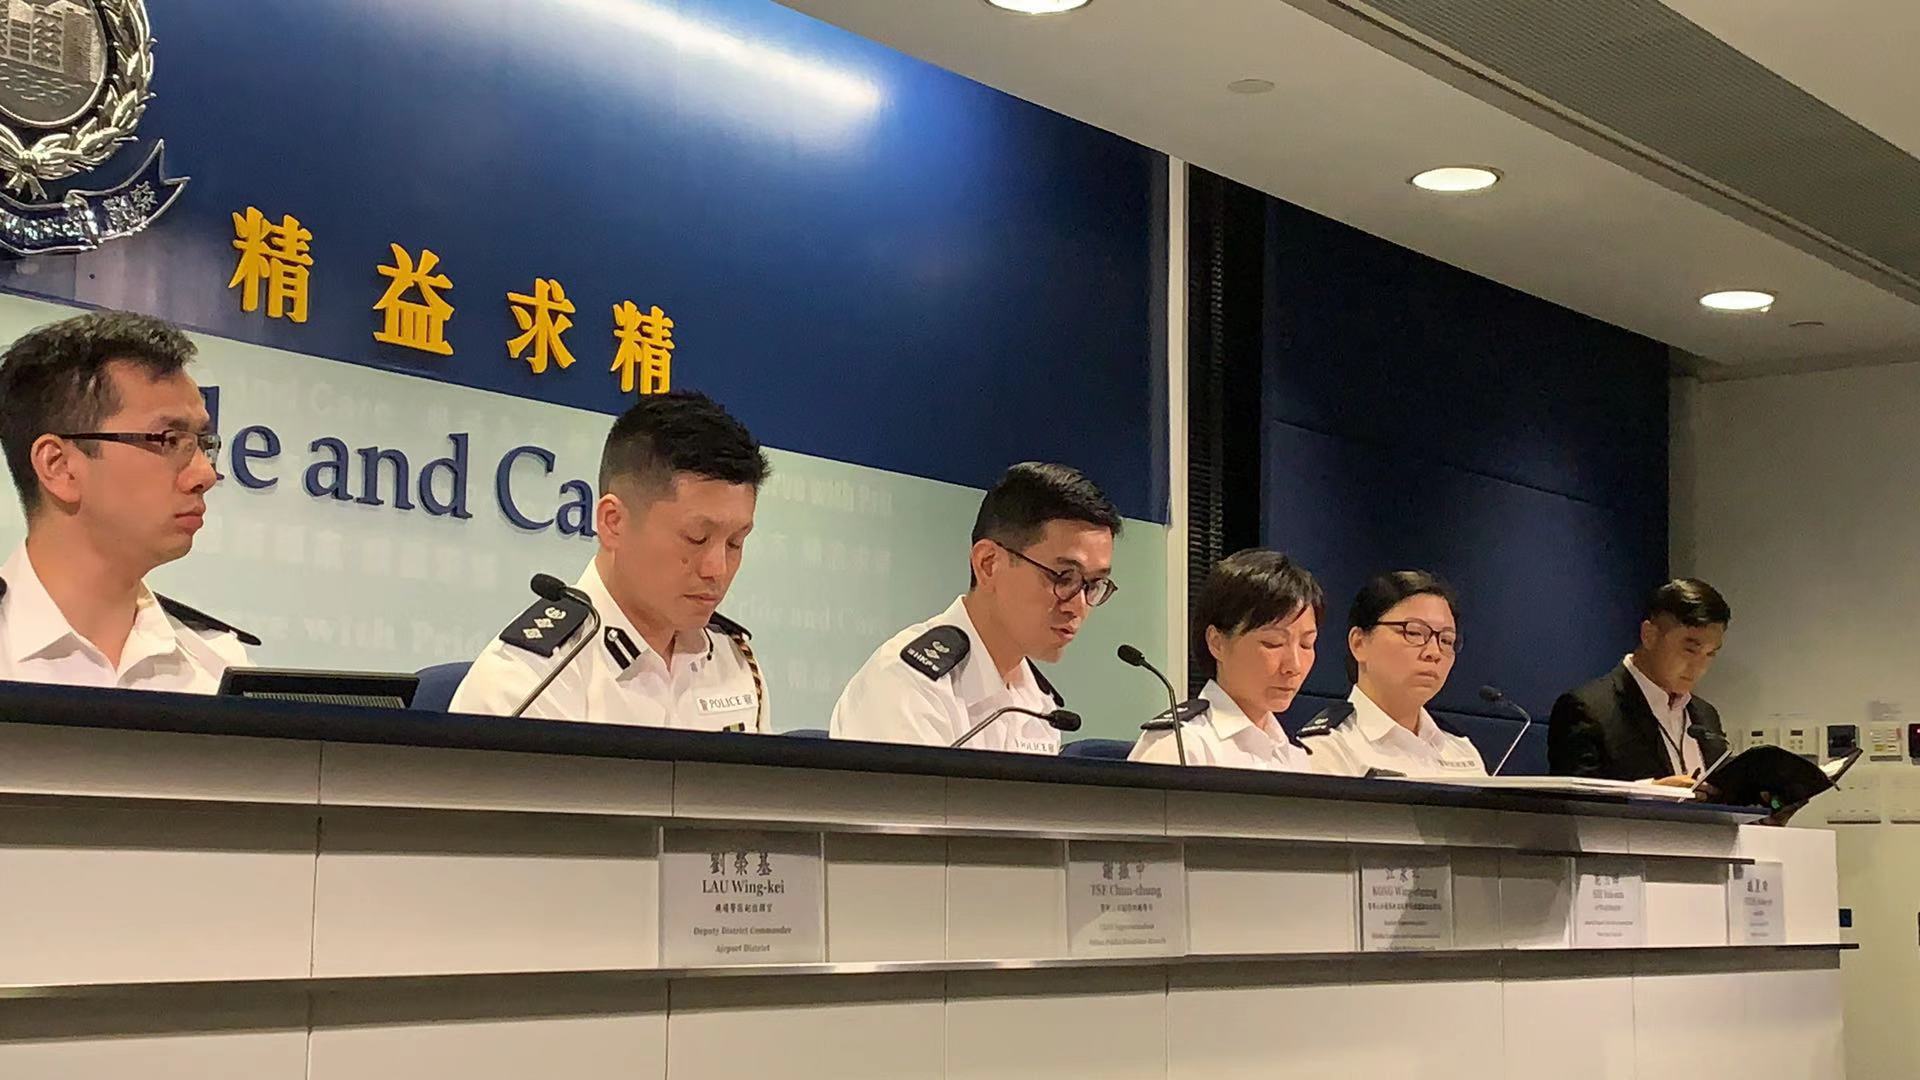 香港：大规模逮捕民主派政治人物 | Human Rights Watch